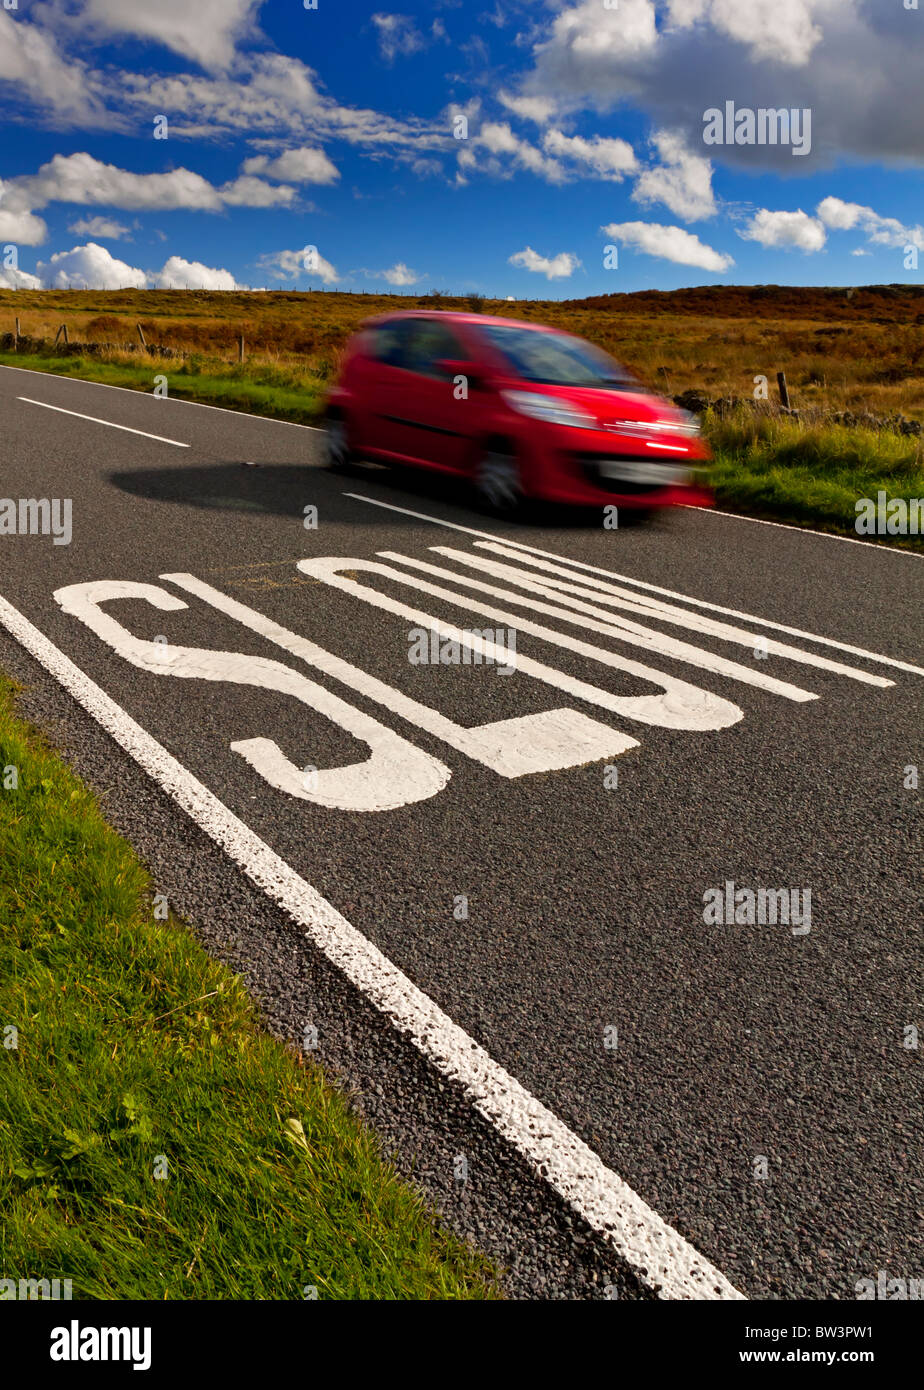 Déménagement rapide voiture près de ralentir sign painted on country road au Royaume-Uni pour avertir les automobilistes de ralentir Banque D'Images